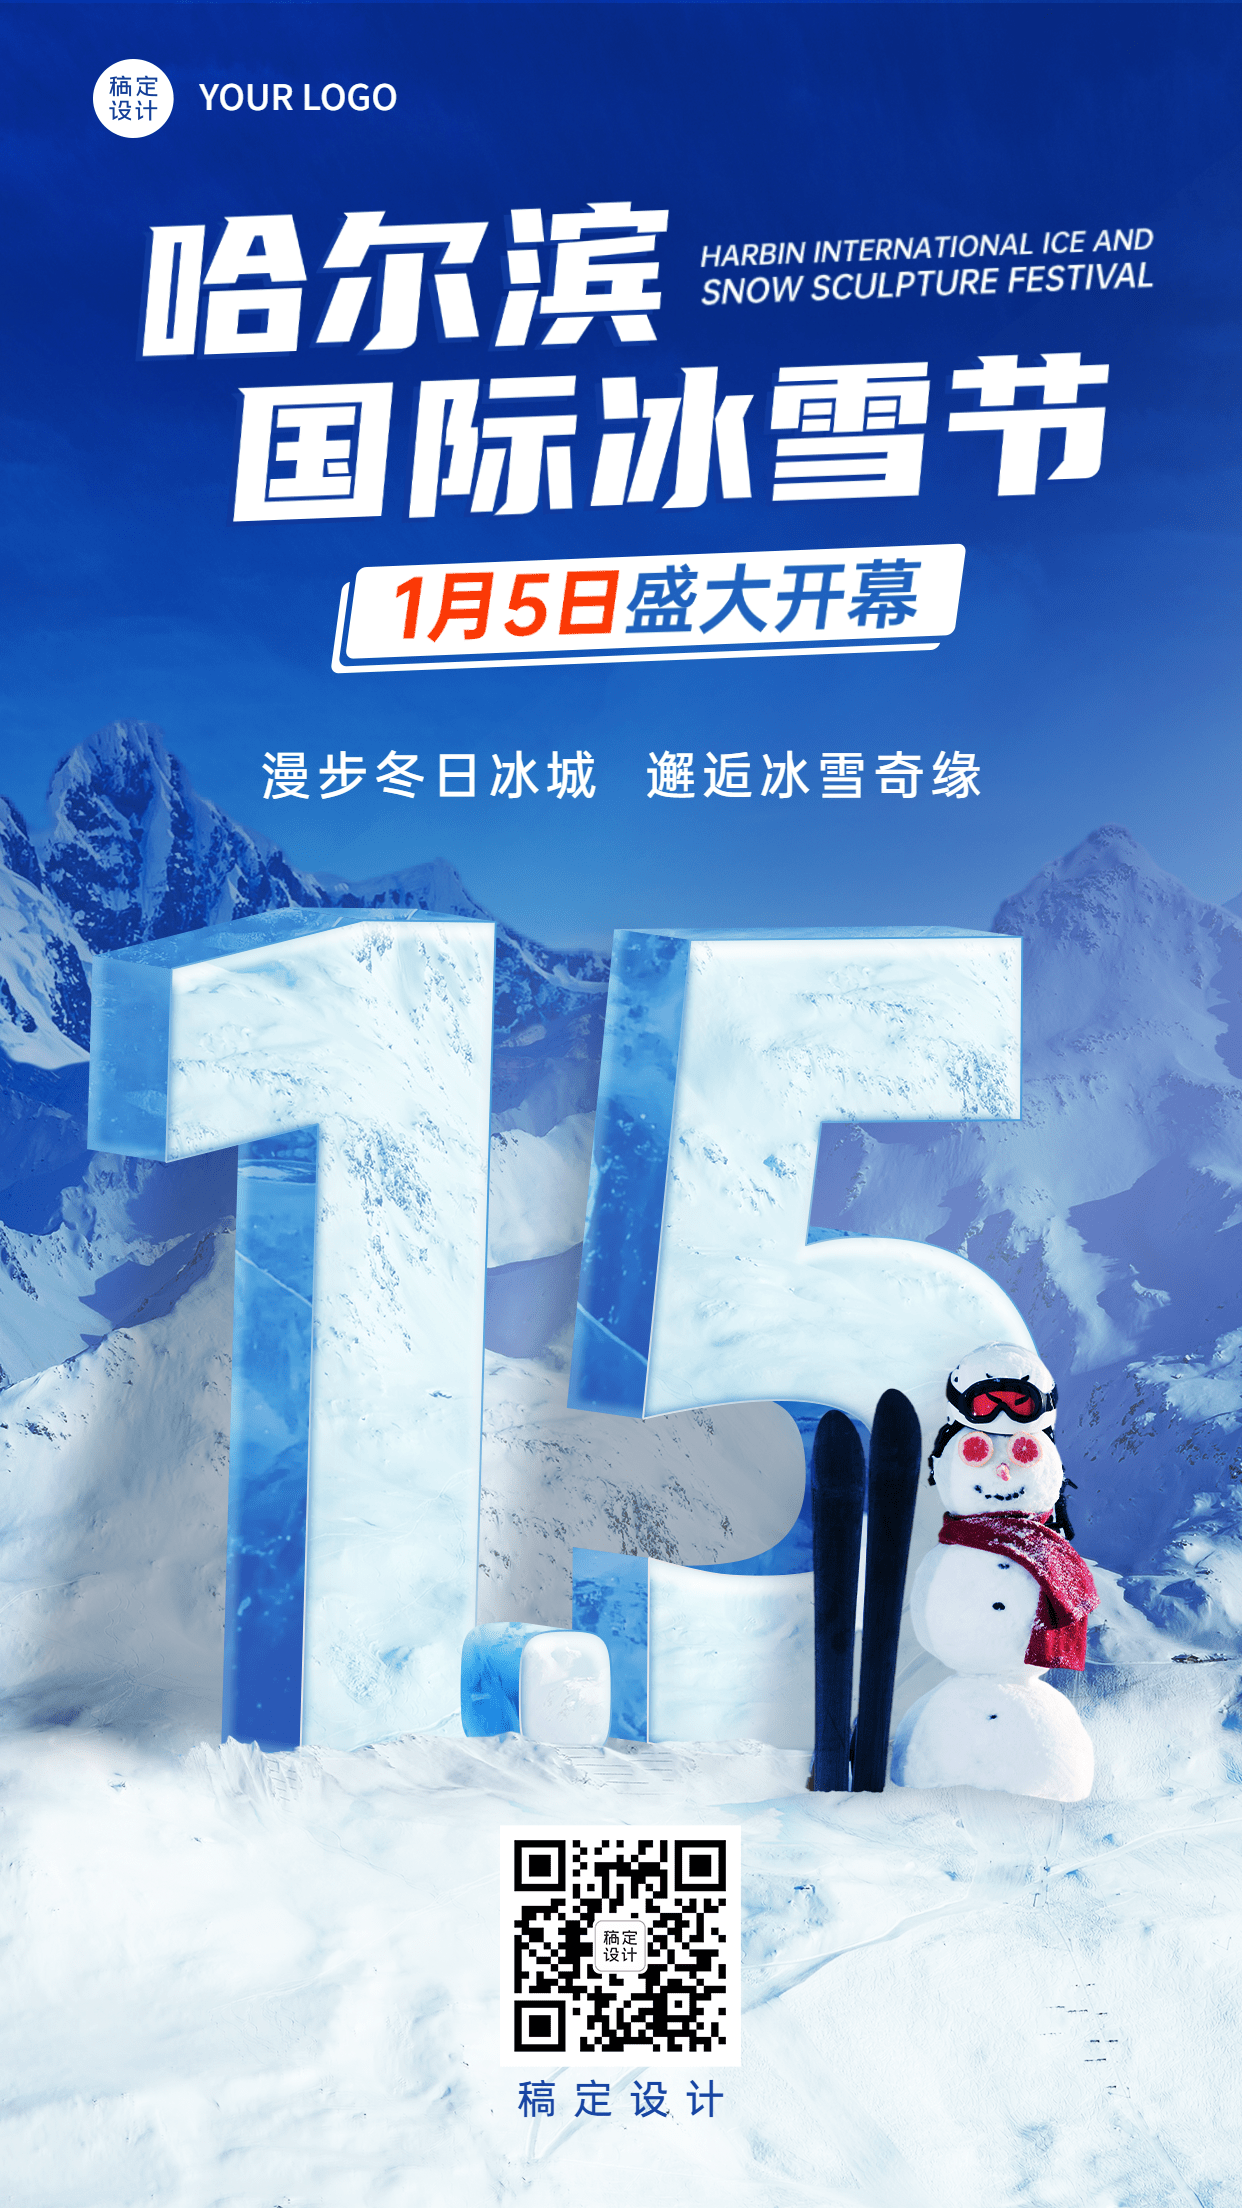 冬季冰雪旅游哈尔滨国际冰雪节活动宣传创意实景海报预览效果